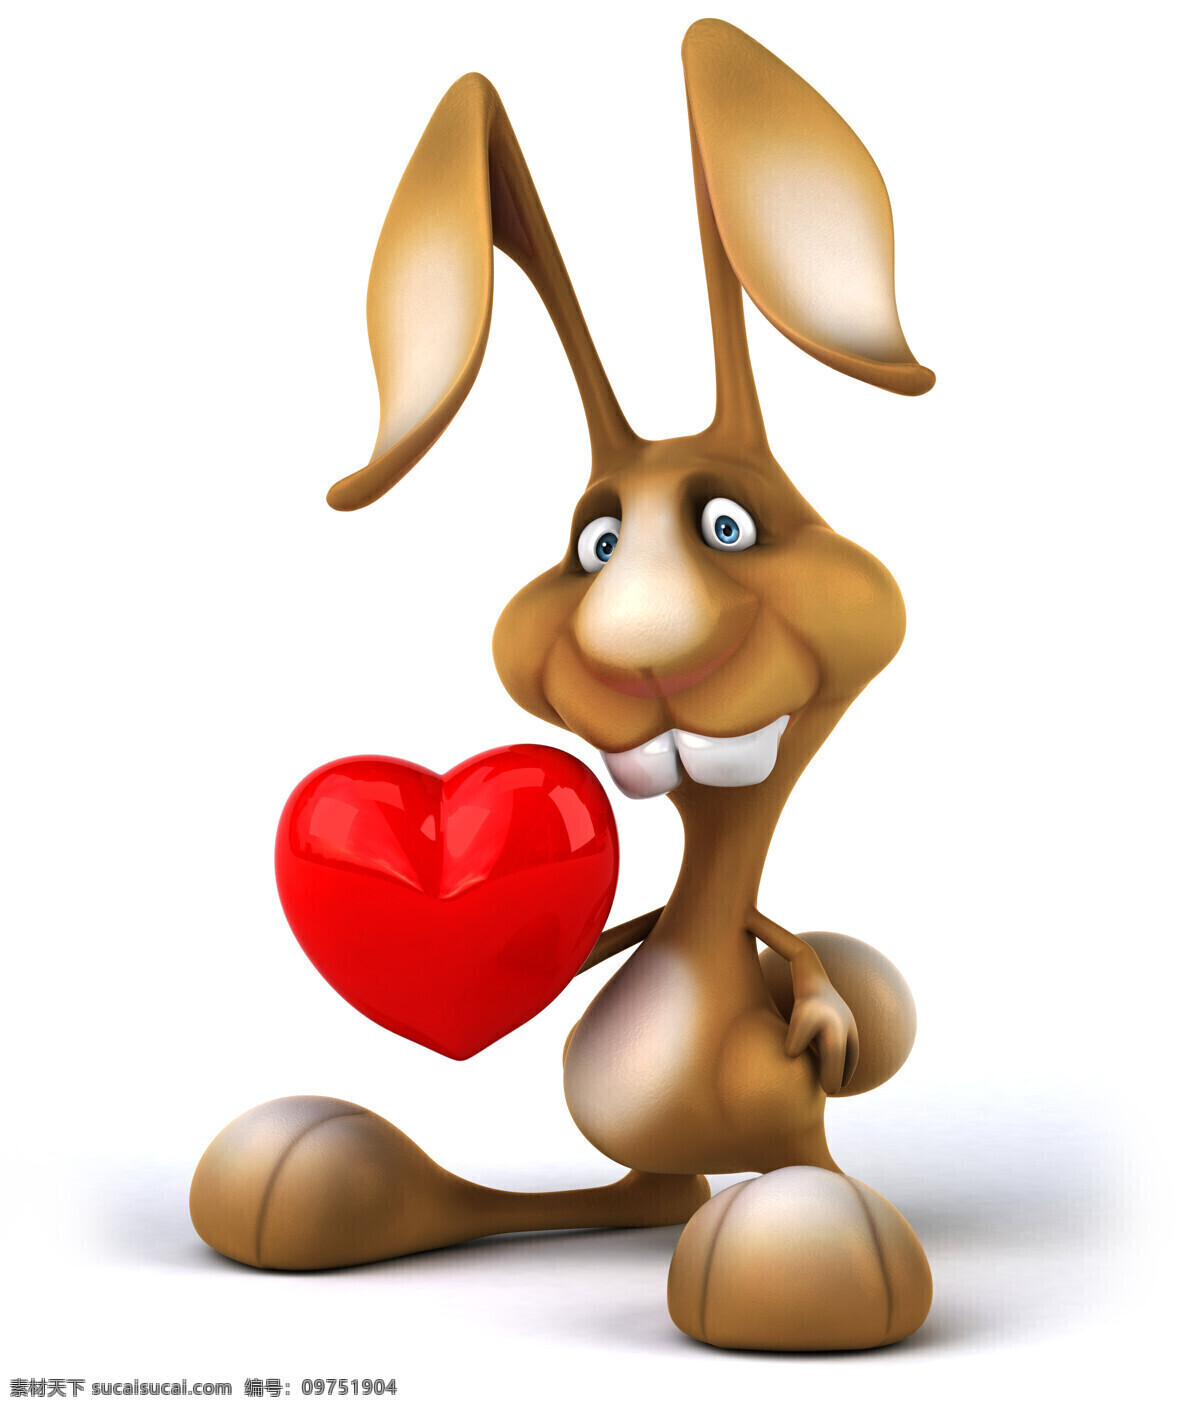 心 的卡 通 兔子 卡通兔子 动物 动物设计 卡通动物 动物世界 动物素材 卡通素材 生物世界